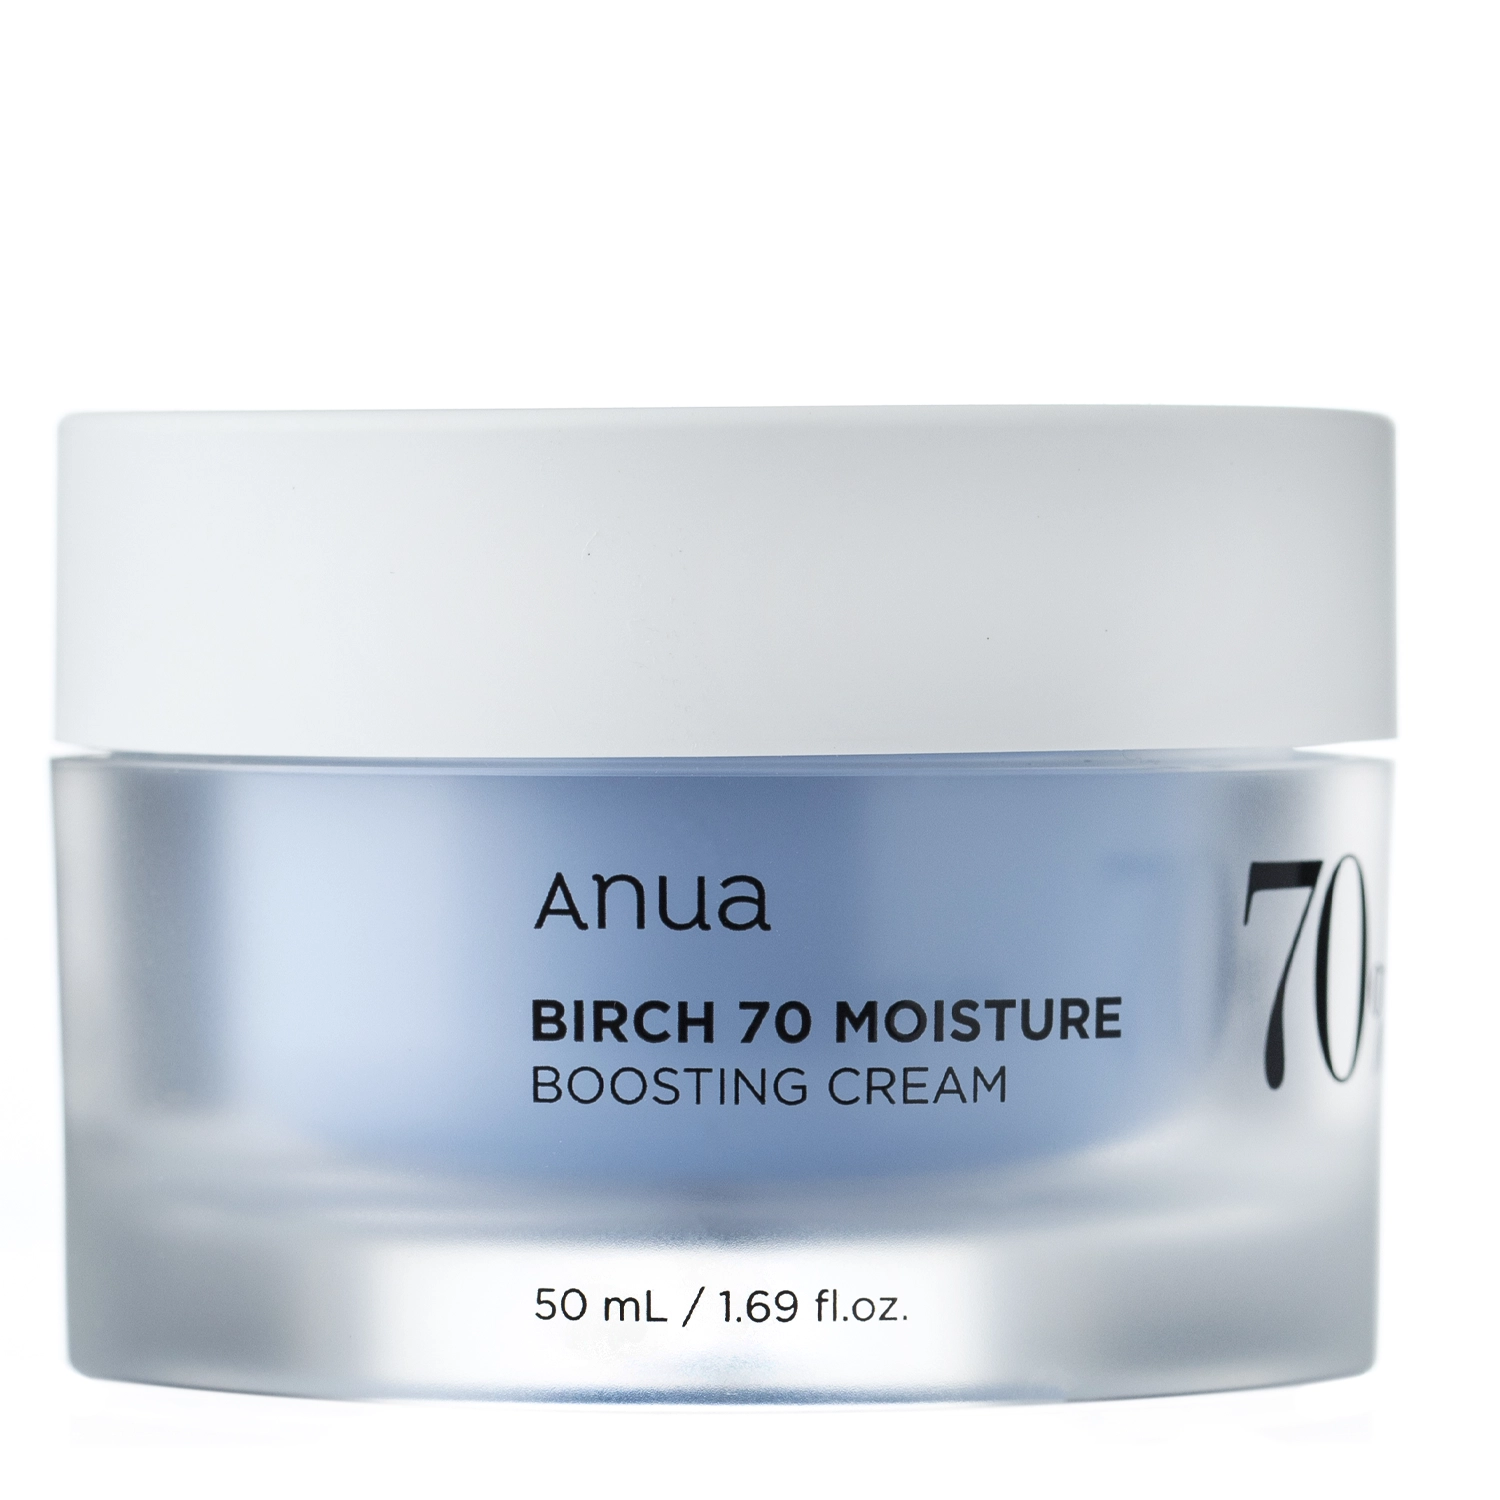 Anua - Birch 70 Moisture Boosting Cream - Увлажняющий крем для лица с березовым соком - 50ml